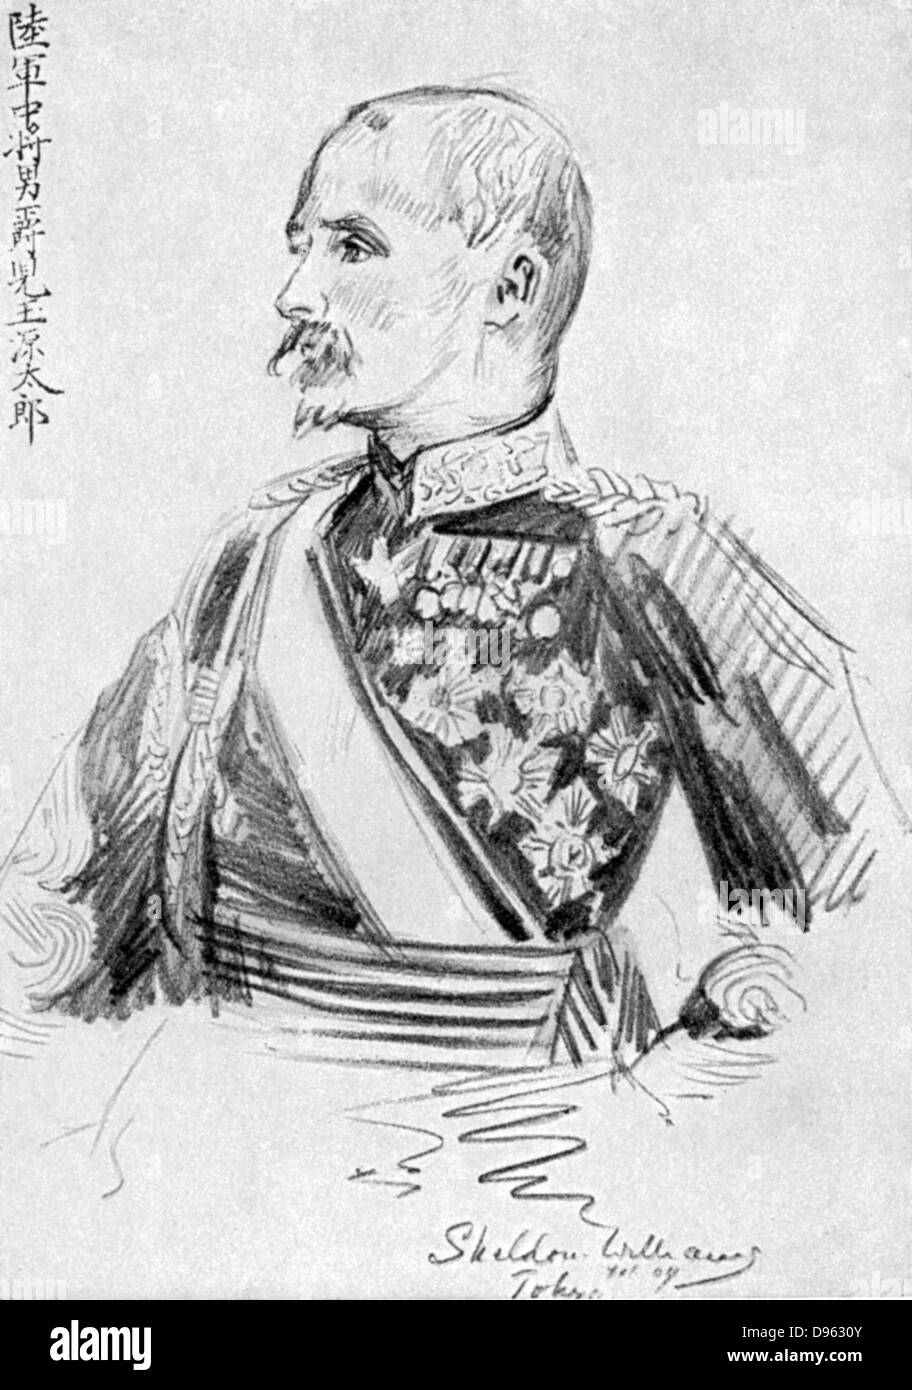 Kodama Gentaro (1852-1906) japanische Soldat und Staatsmann, für japanische Sieg in der Mandschurei verantwortlich während des Russisch-Japanischen Krieges 1904-1905. Stockfoto